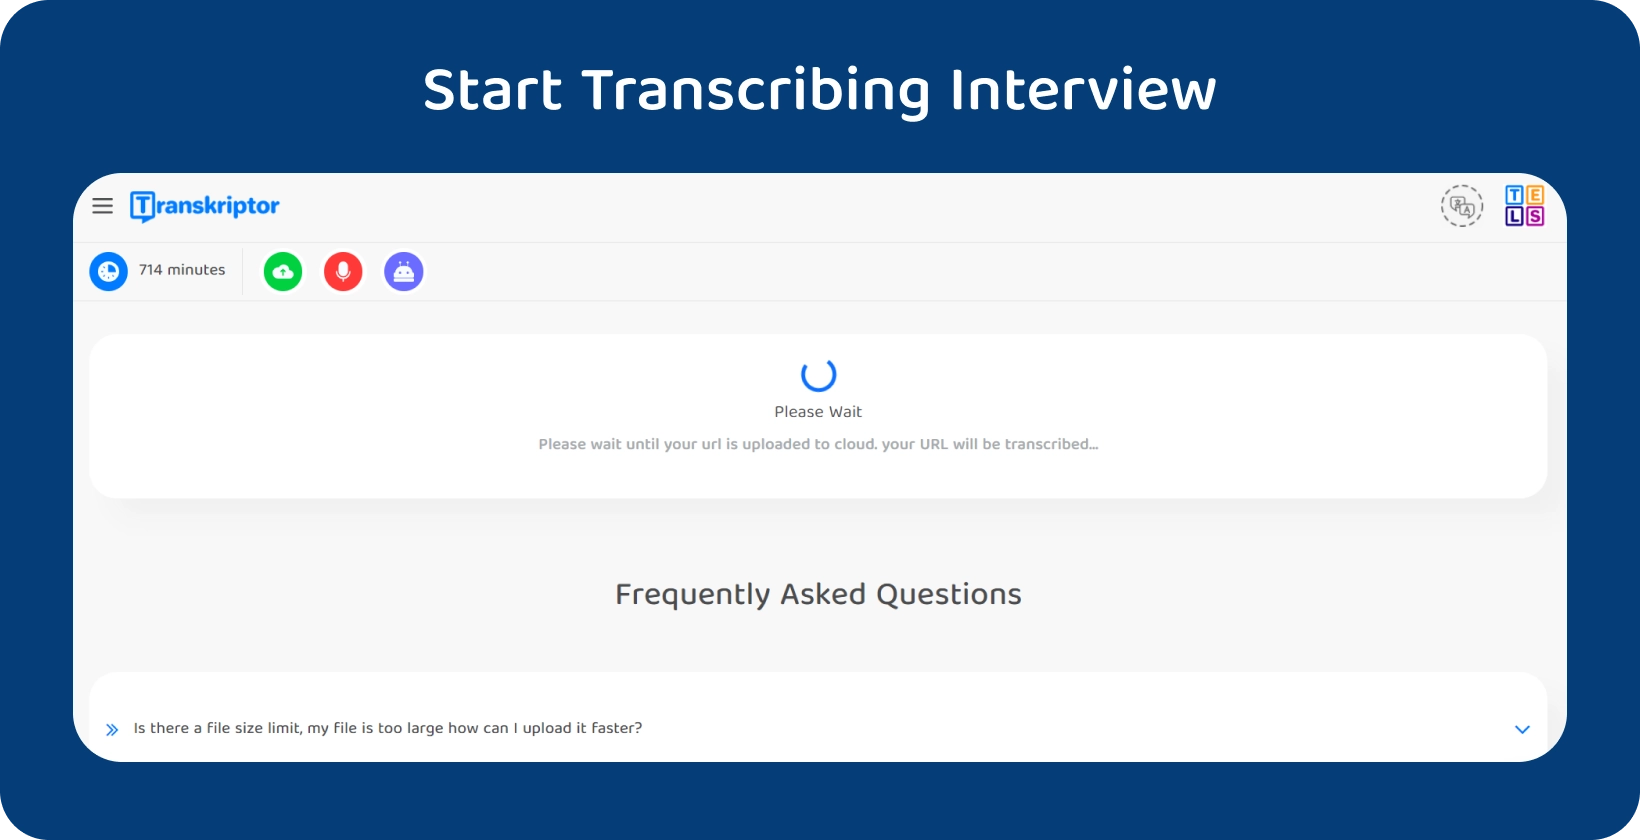 Bắt đầu phiên âm luận án với Transkriptor, hiển thị một cuộc phỏng vấn dài 714 phút đang chờ xử lý.